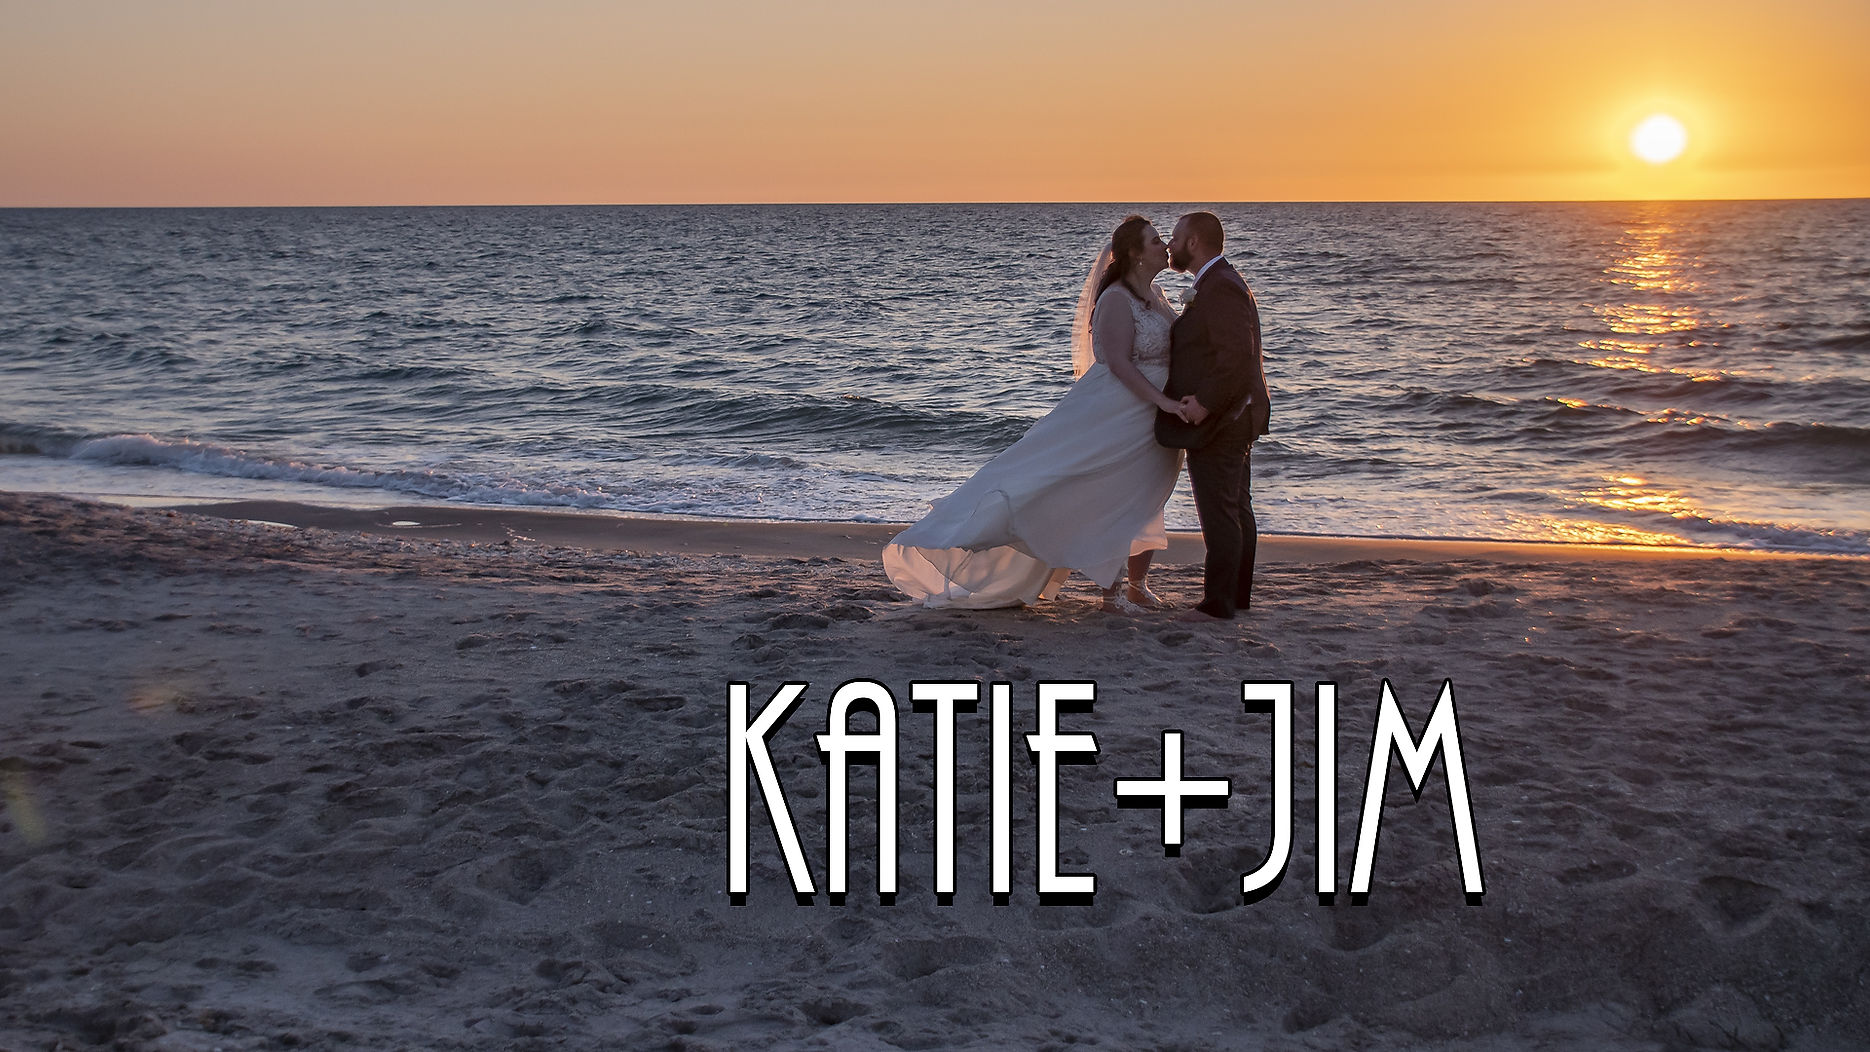 Katie & Jim Ceremony Wedding Film